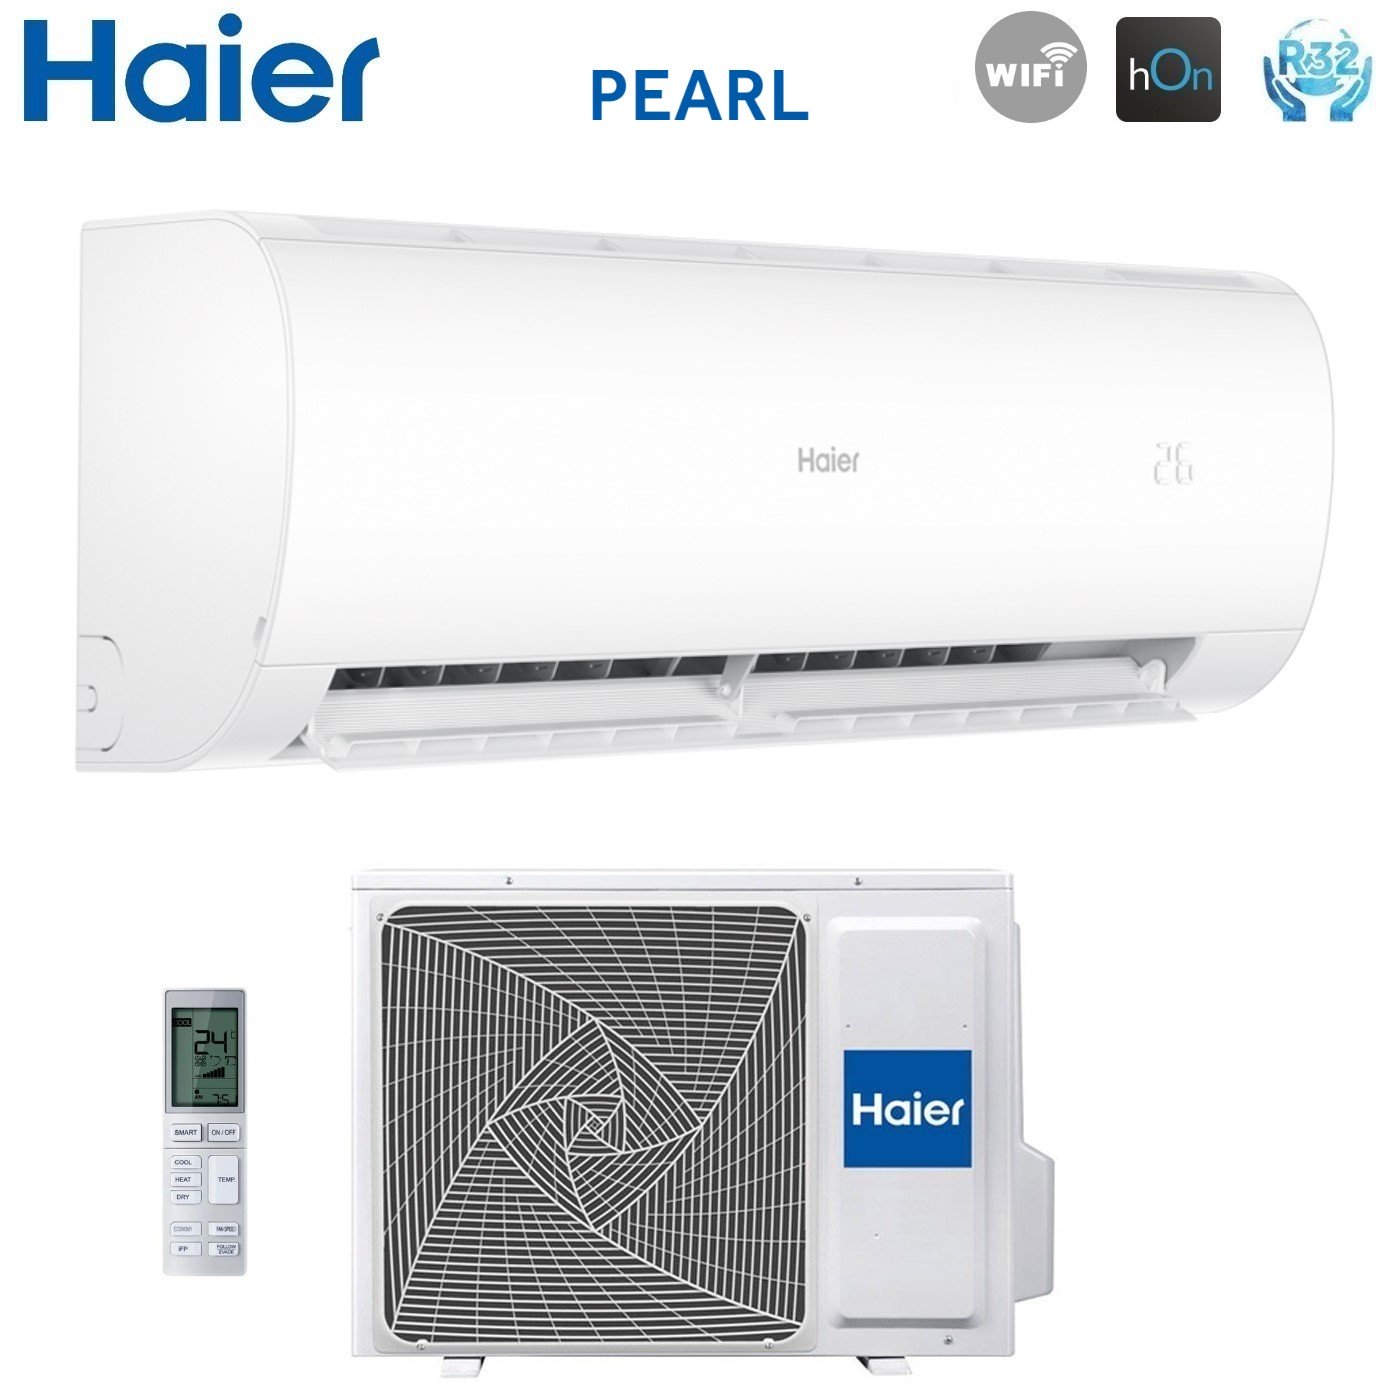 Climatizzatore Condizionatore Haier Inverter serie PEARL 12000 Btu AS35PBPHRA-PRE R-32 Wi-Fi Integrato A+++/A++